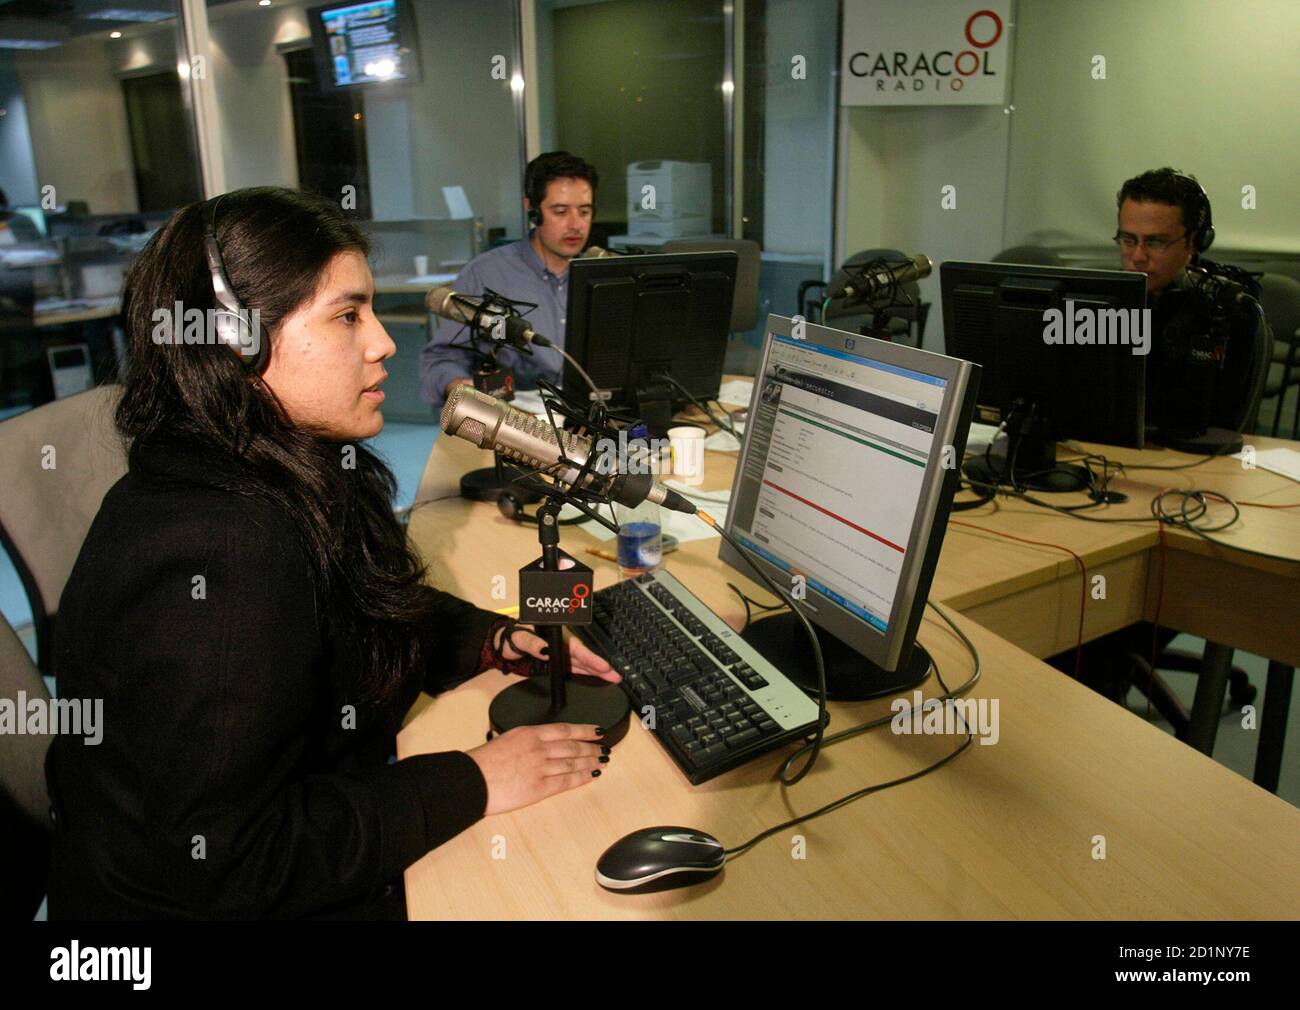 Los miembros del equipo que produce el programa de radio 'Gacapping Voices'  hablan en el aire con un pariente de una persona secuestrada en la estación  de radio Caracol en Bogotá el